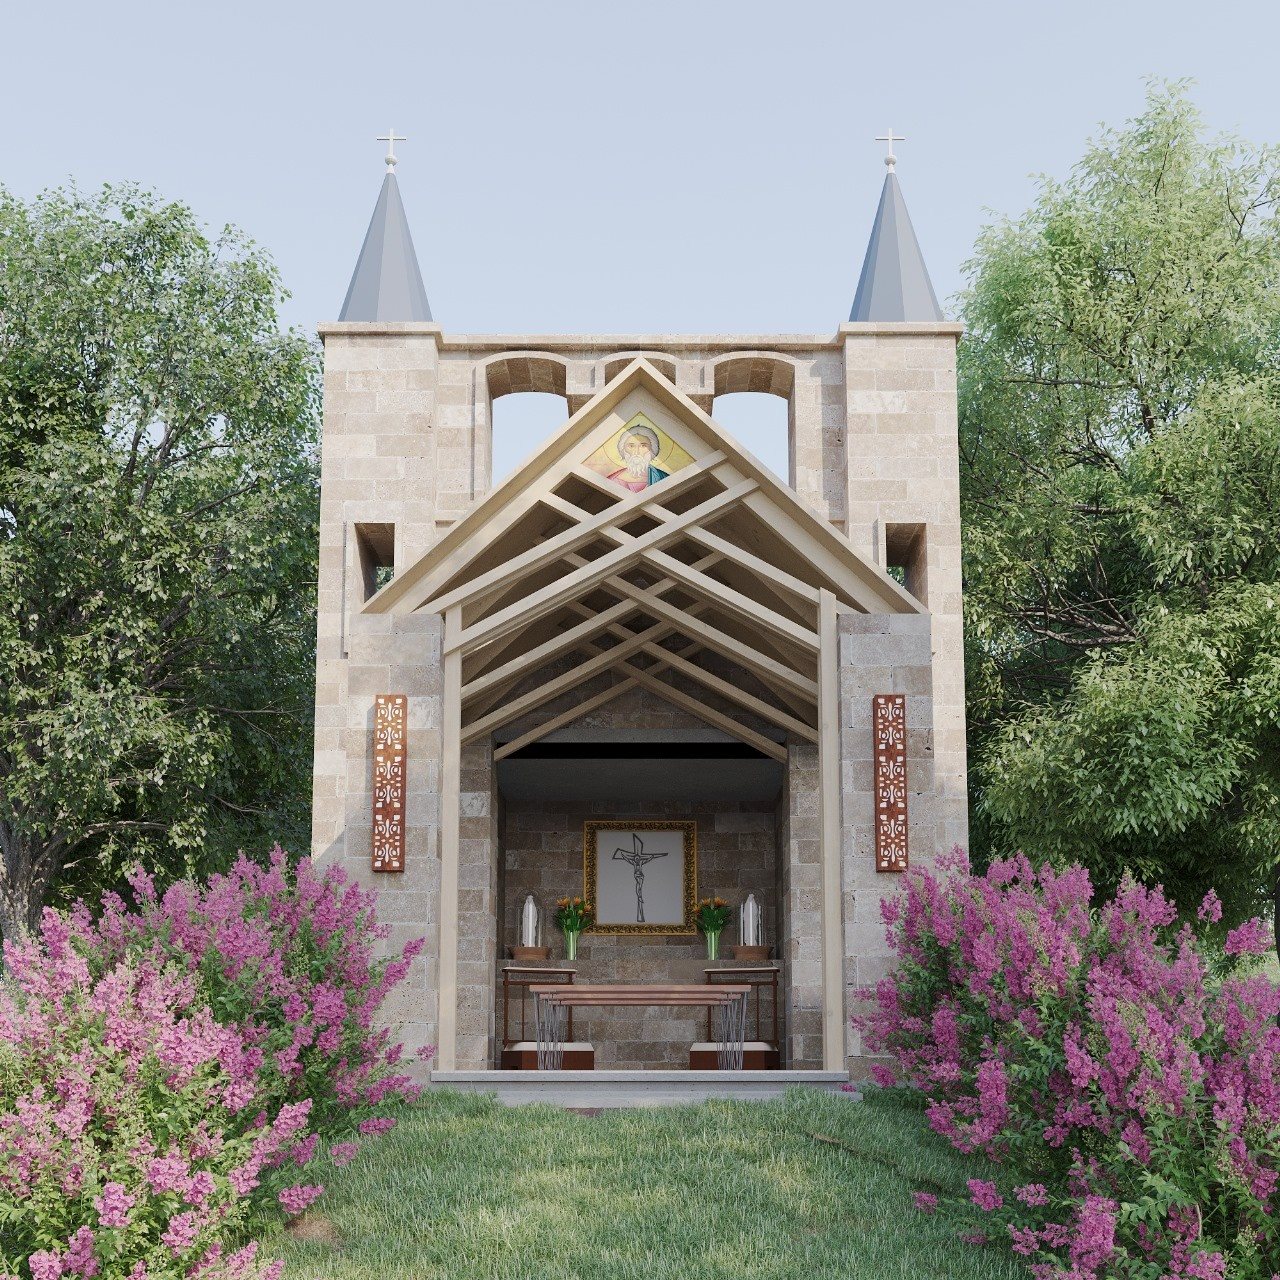 A projeção artística mostra como ficará a capela, que é inspirada na catedral da cidade de St. Andrews, Escócia